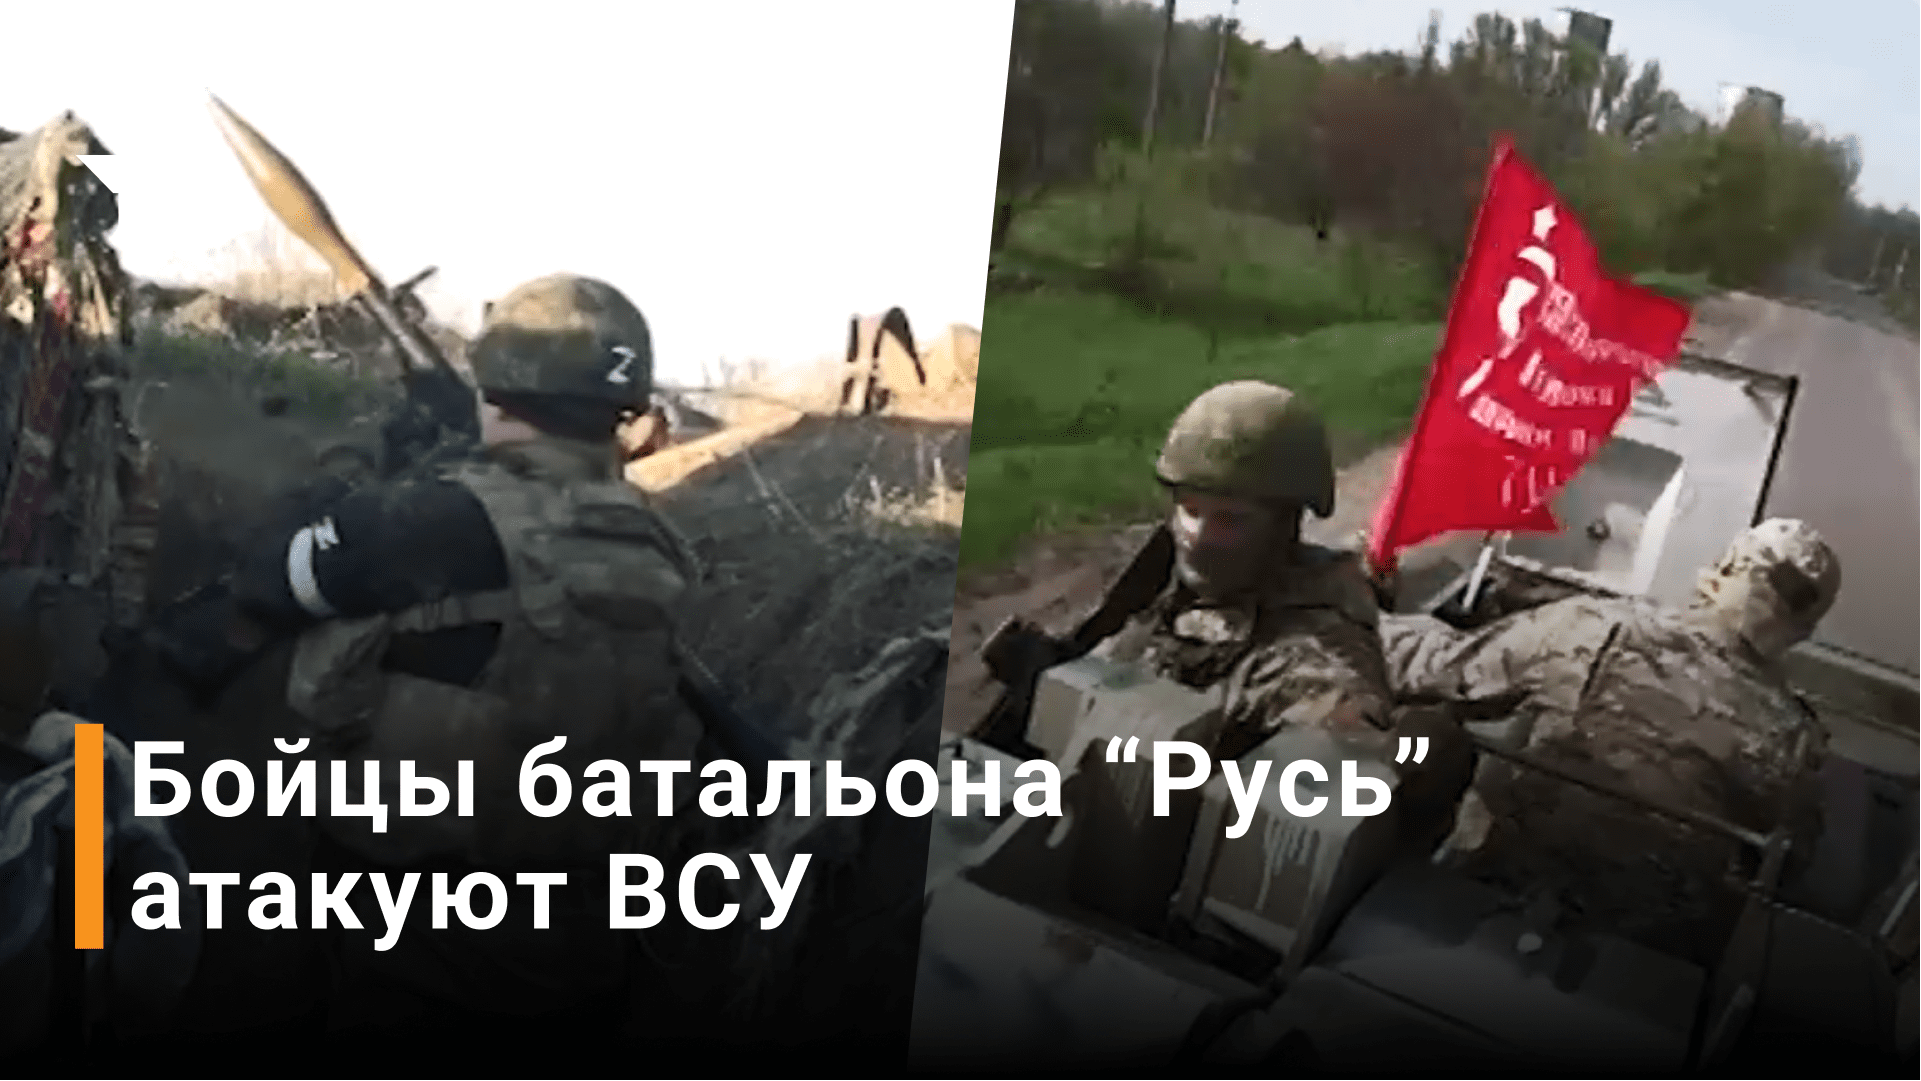 Кадры столкновений донецкого батальона "Русь" с ВСУ / Новости РЕН